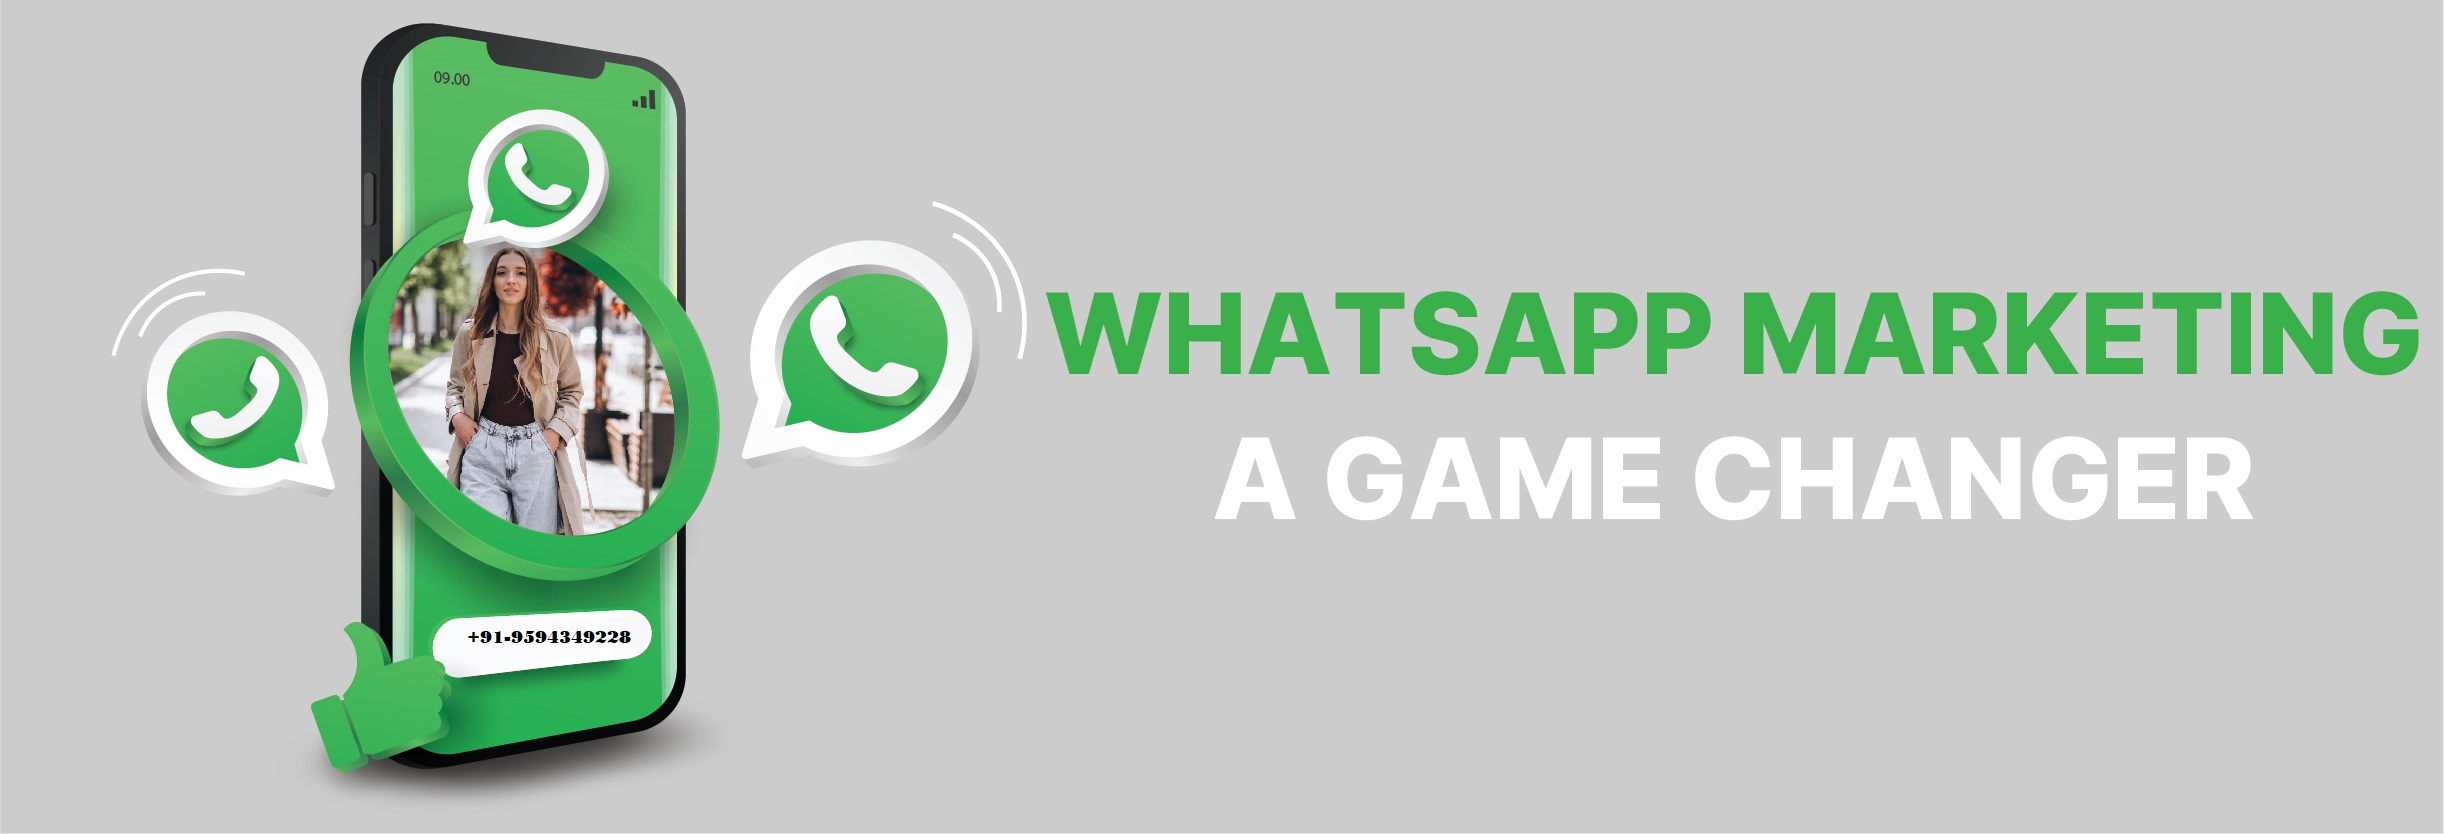 WhatsApp marketing service company in Noida, Delhi ncr, India